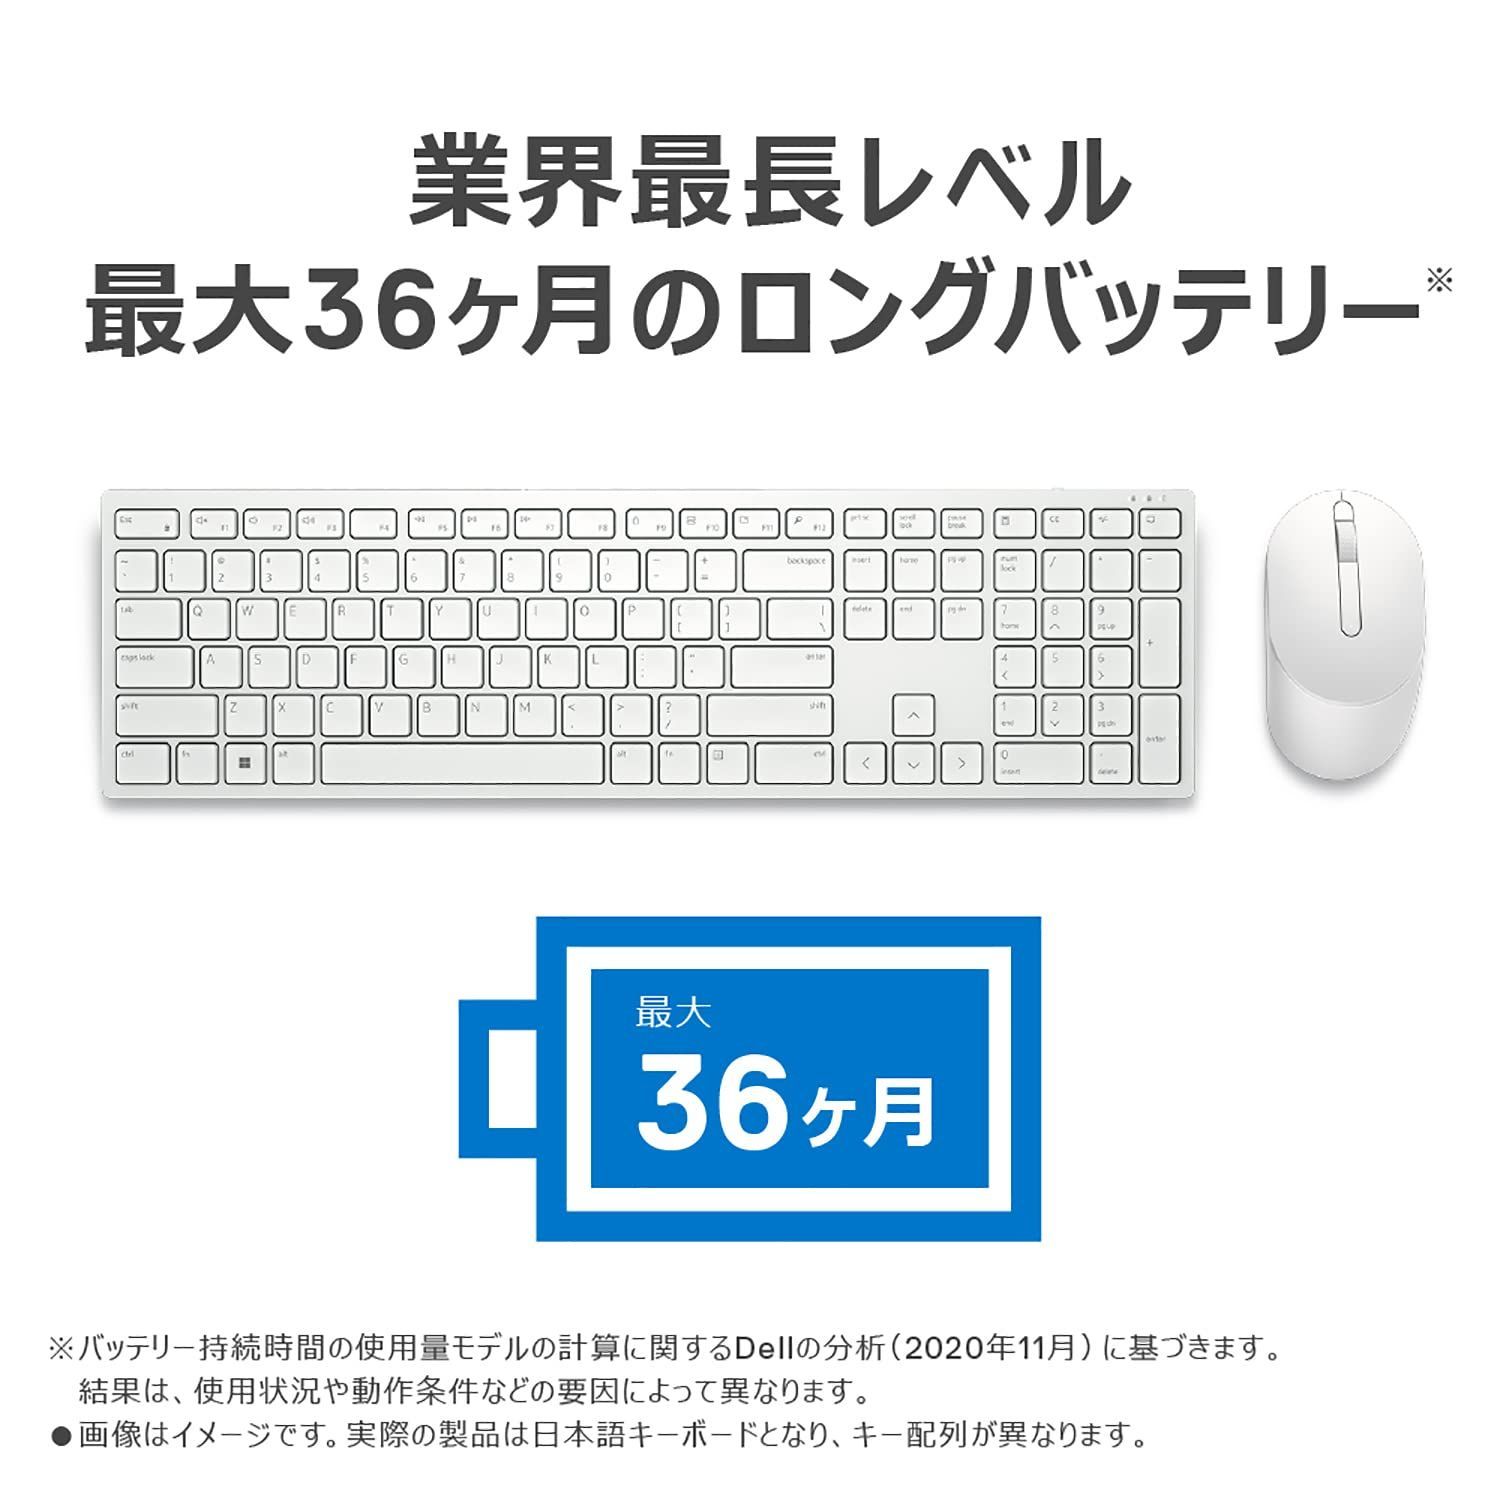 特価商品】キーボードu0026マウス(日本語) Proワイヤレス KM5221W Dell ホワイト - メルカリ